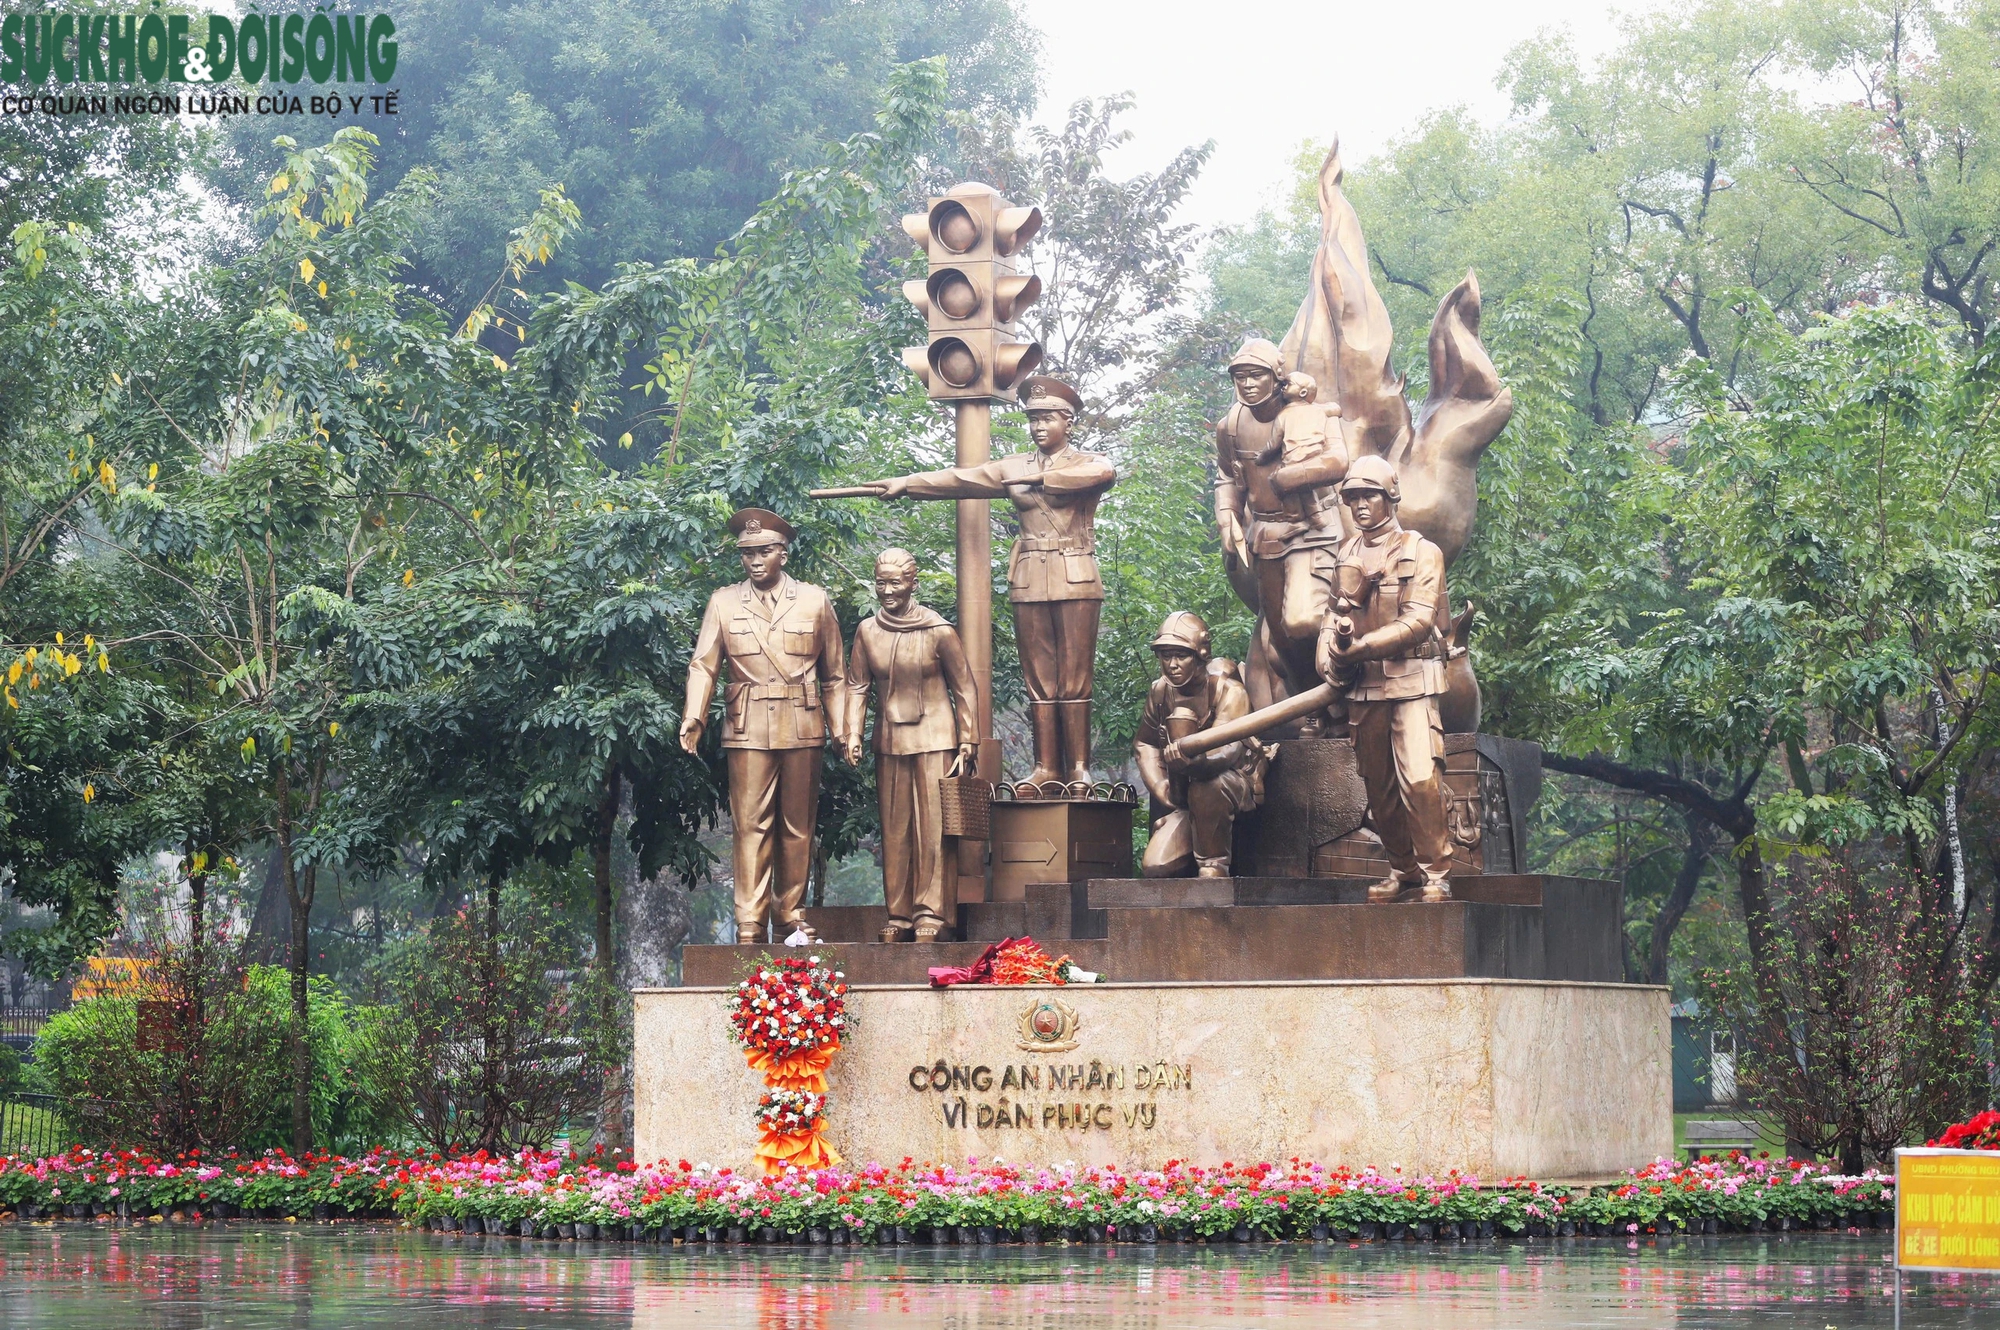 Hiện trạng khu vực hồ ở Hà Nội được đề xuất xây dựng 5 quảng trường- Ảnh 12.